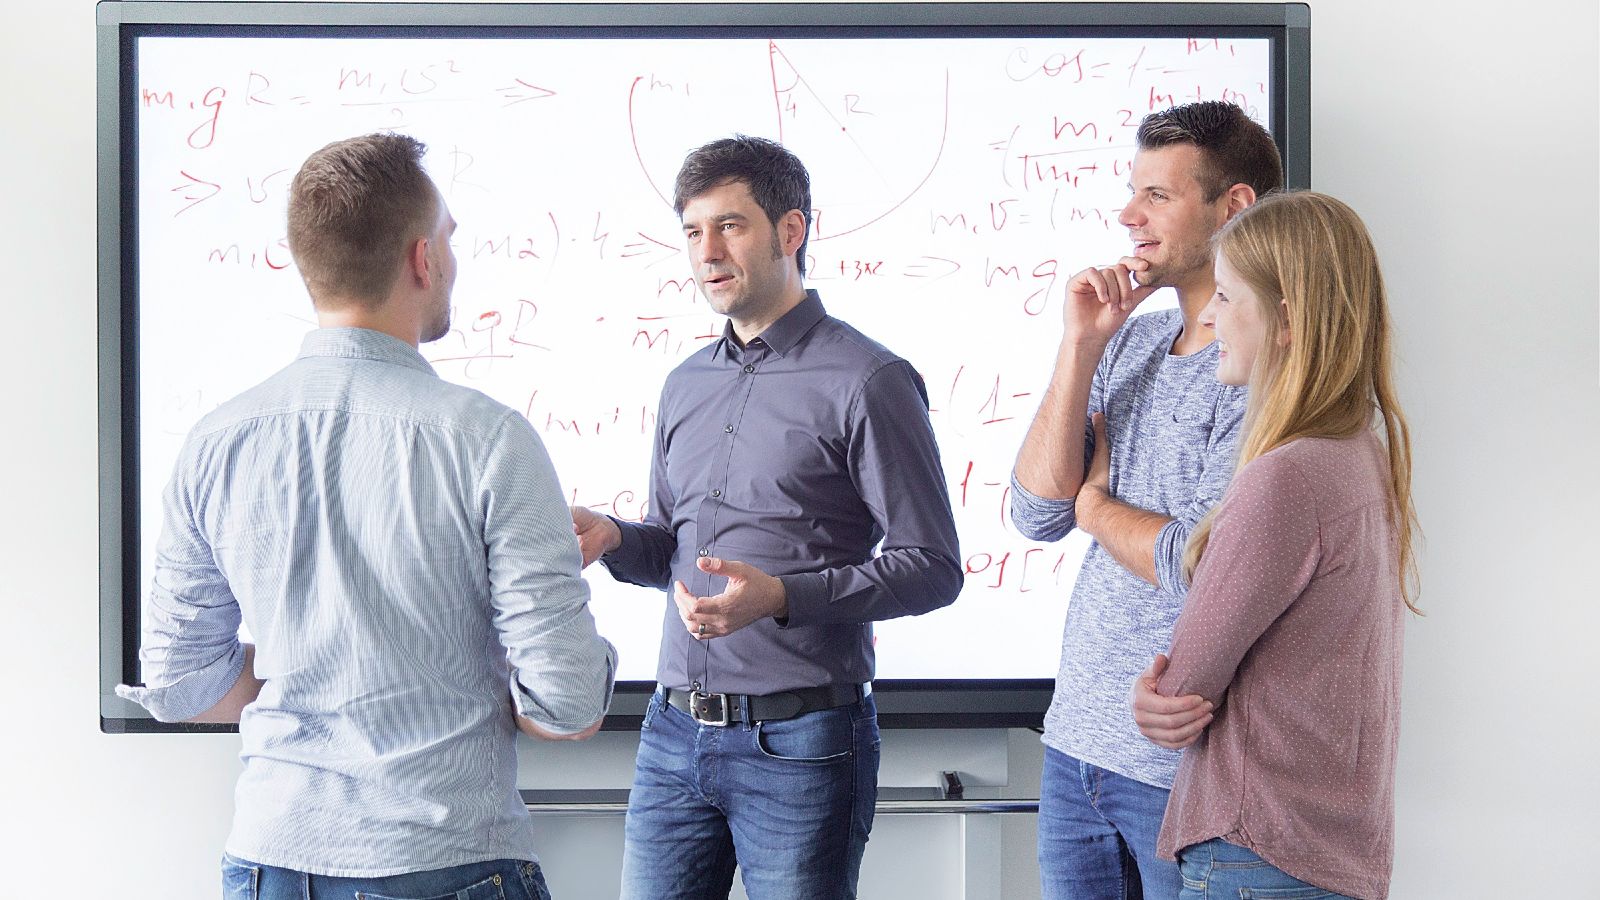 Das Bild zeigt vier Personen, die vor einem Smartboard miteinander sprechen